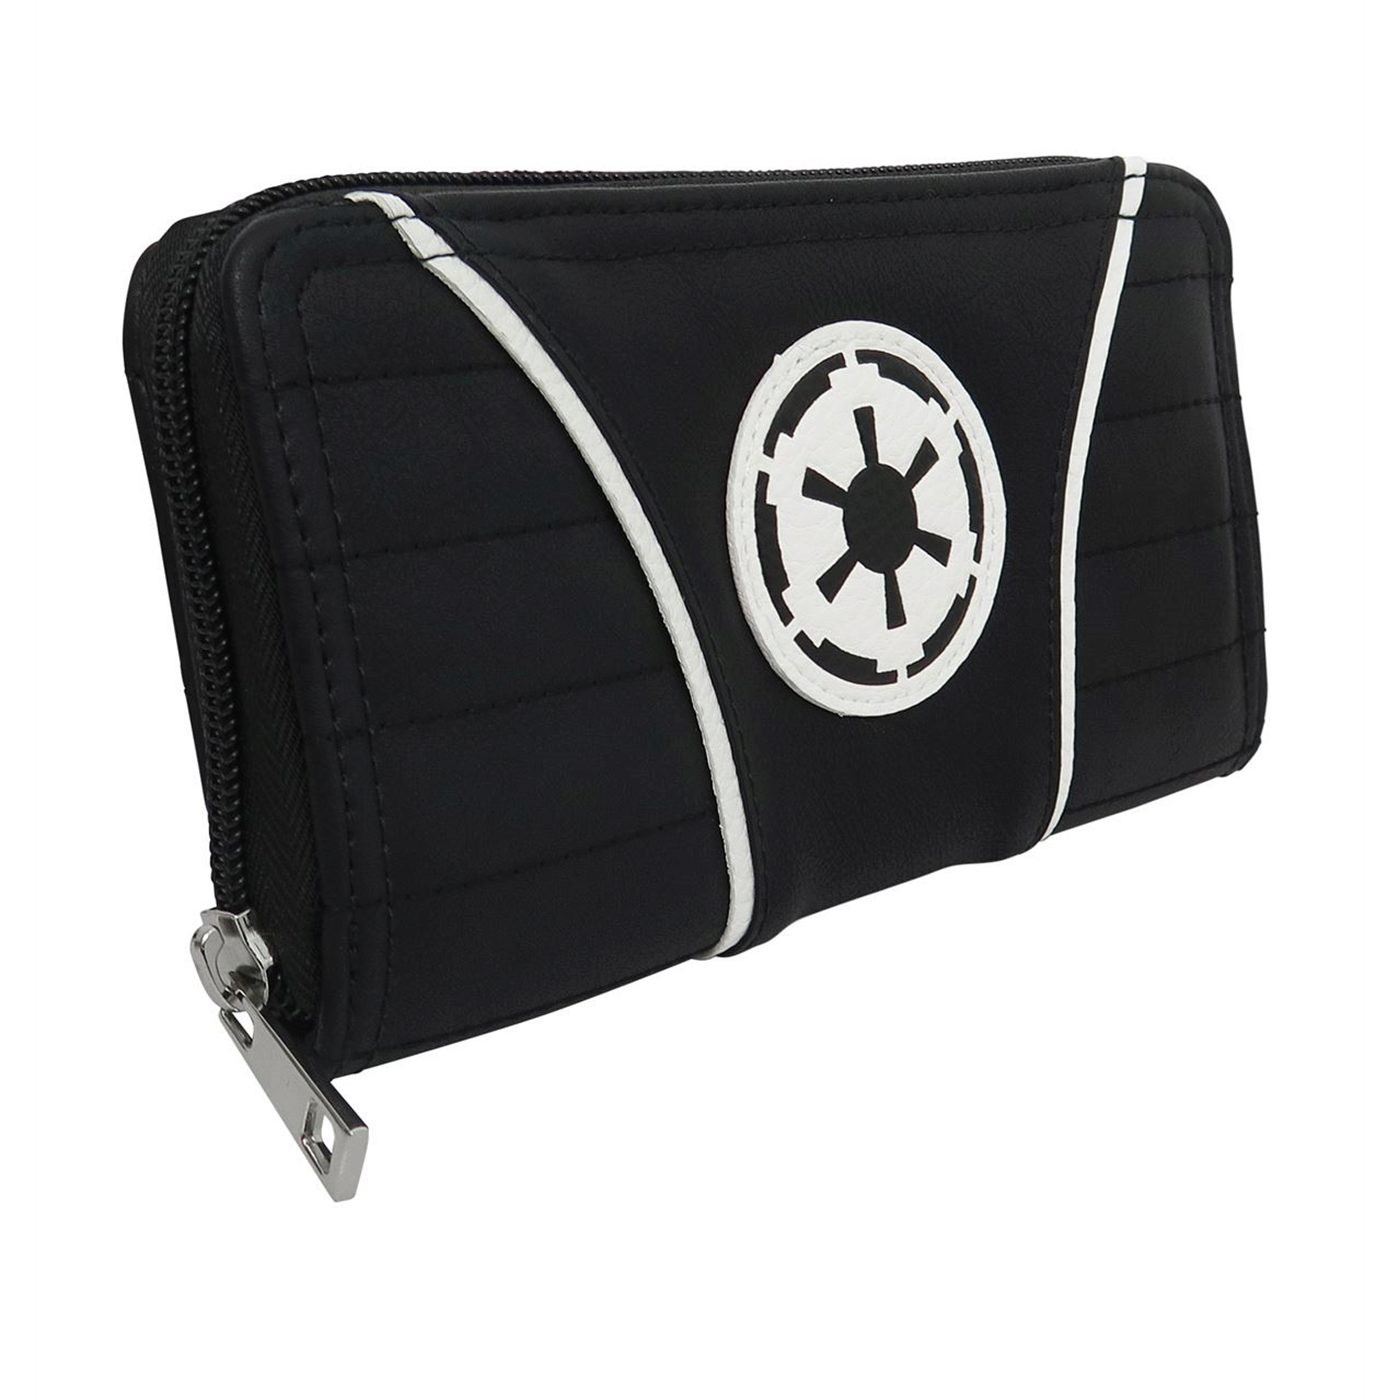 Star Wars Imperial Crest Women's Zipper Wallet